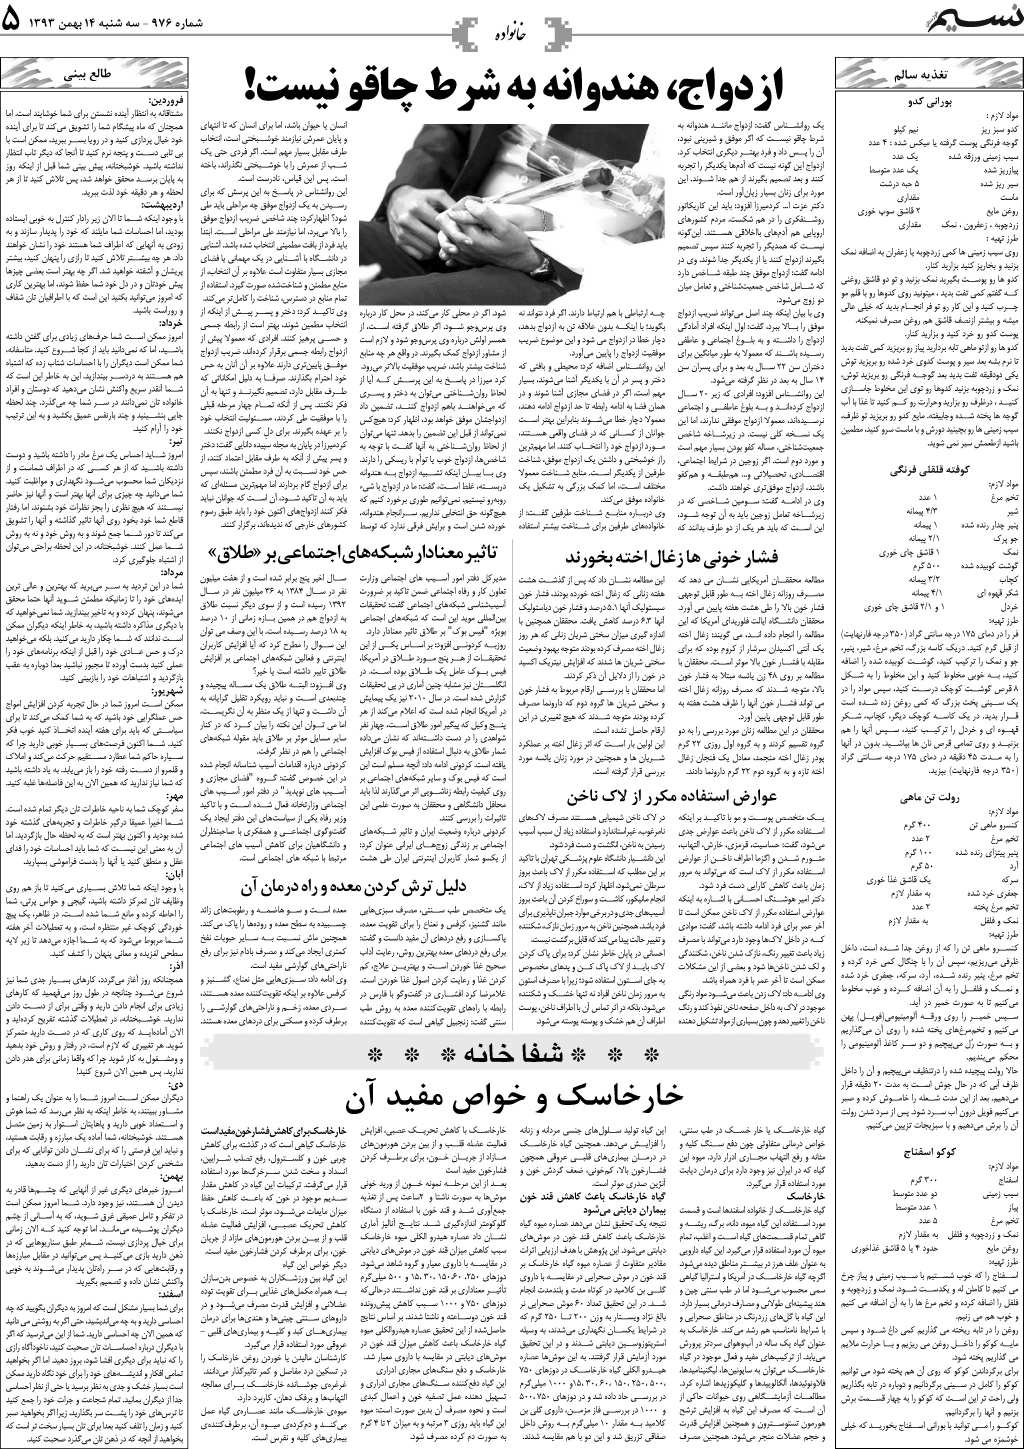 صفحه خانواده روزنامه نسیم شماره 976